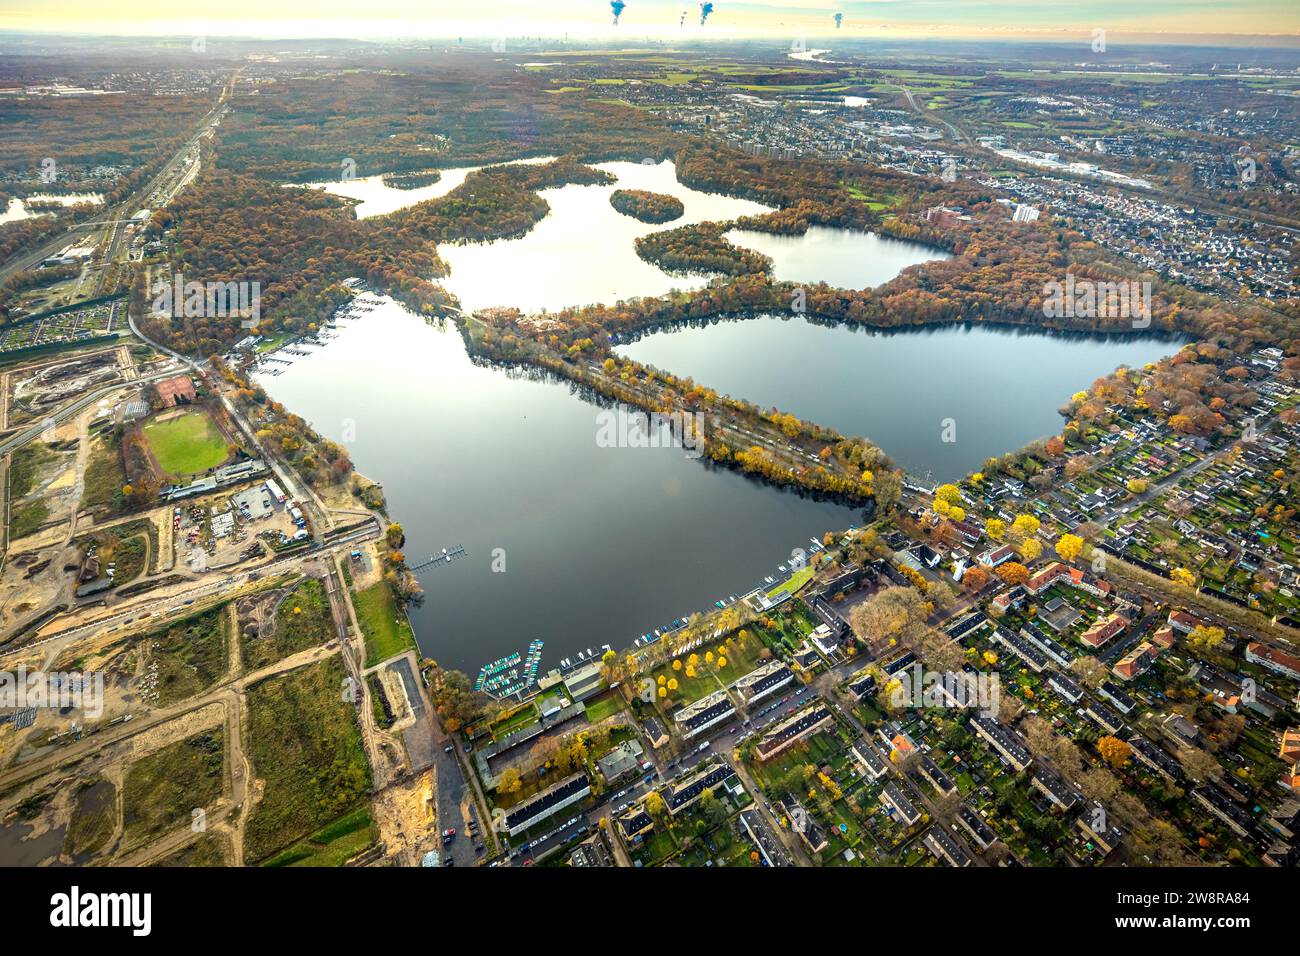 Luftaufnahme, Sechs-Seen-Platte, Naherholungsgebiet, Fernsicht mit rauchenden Kühltürmen, umgeben von herbstlichen Laubbäumen, Wedau, Duisburg, Ru Stockfoto